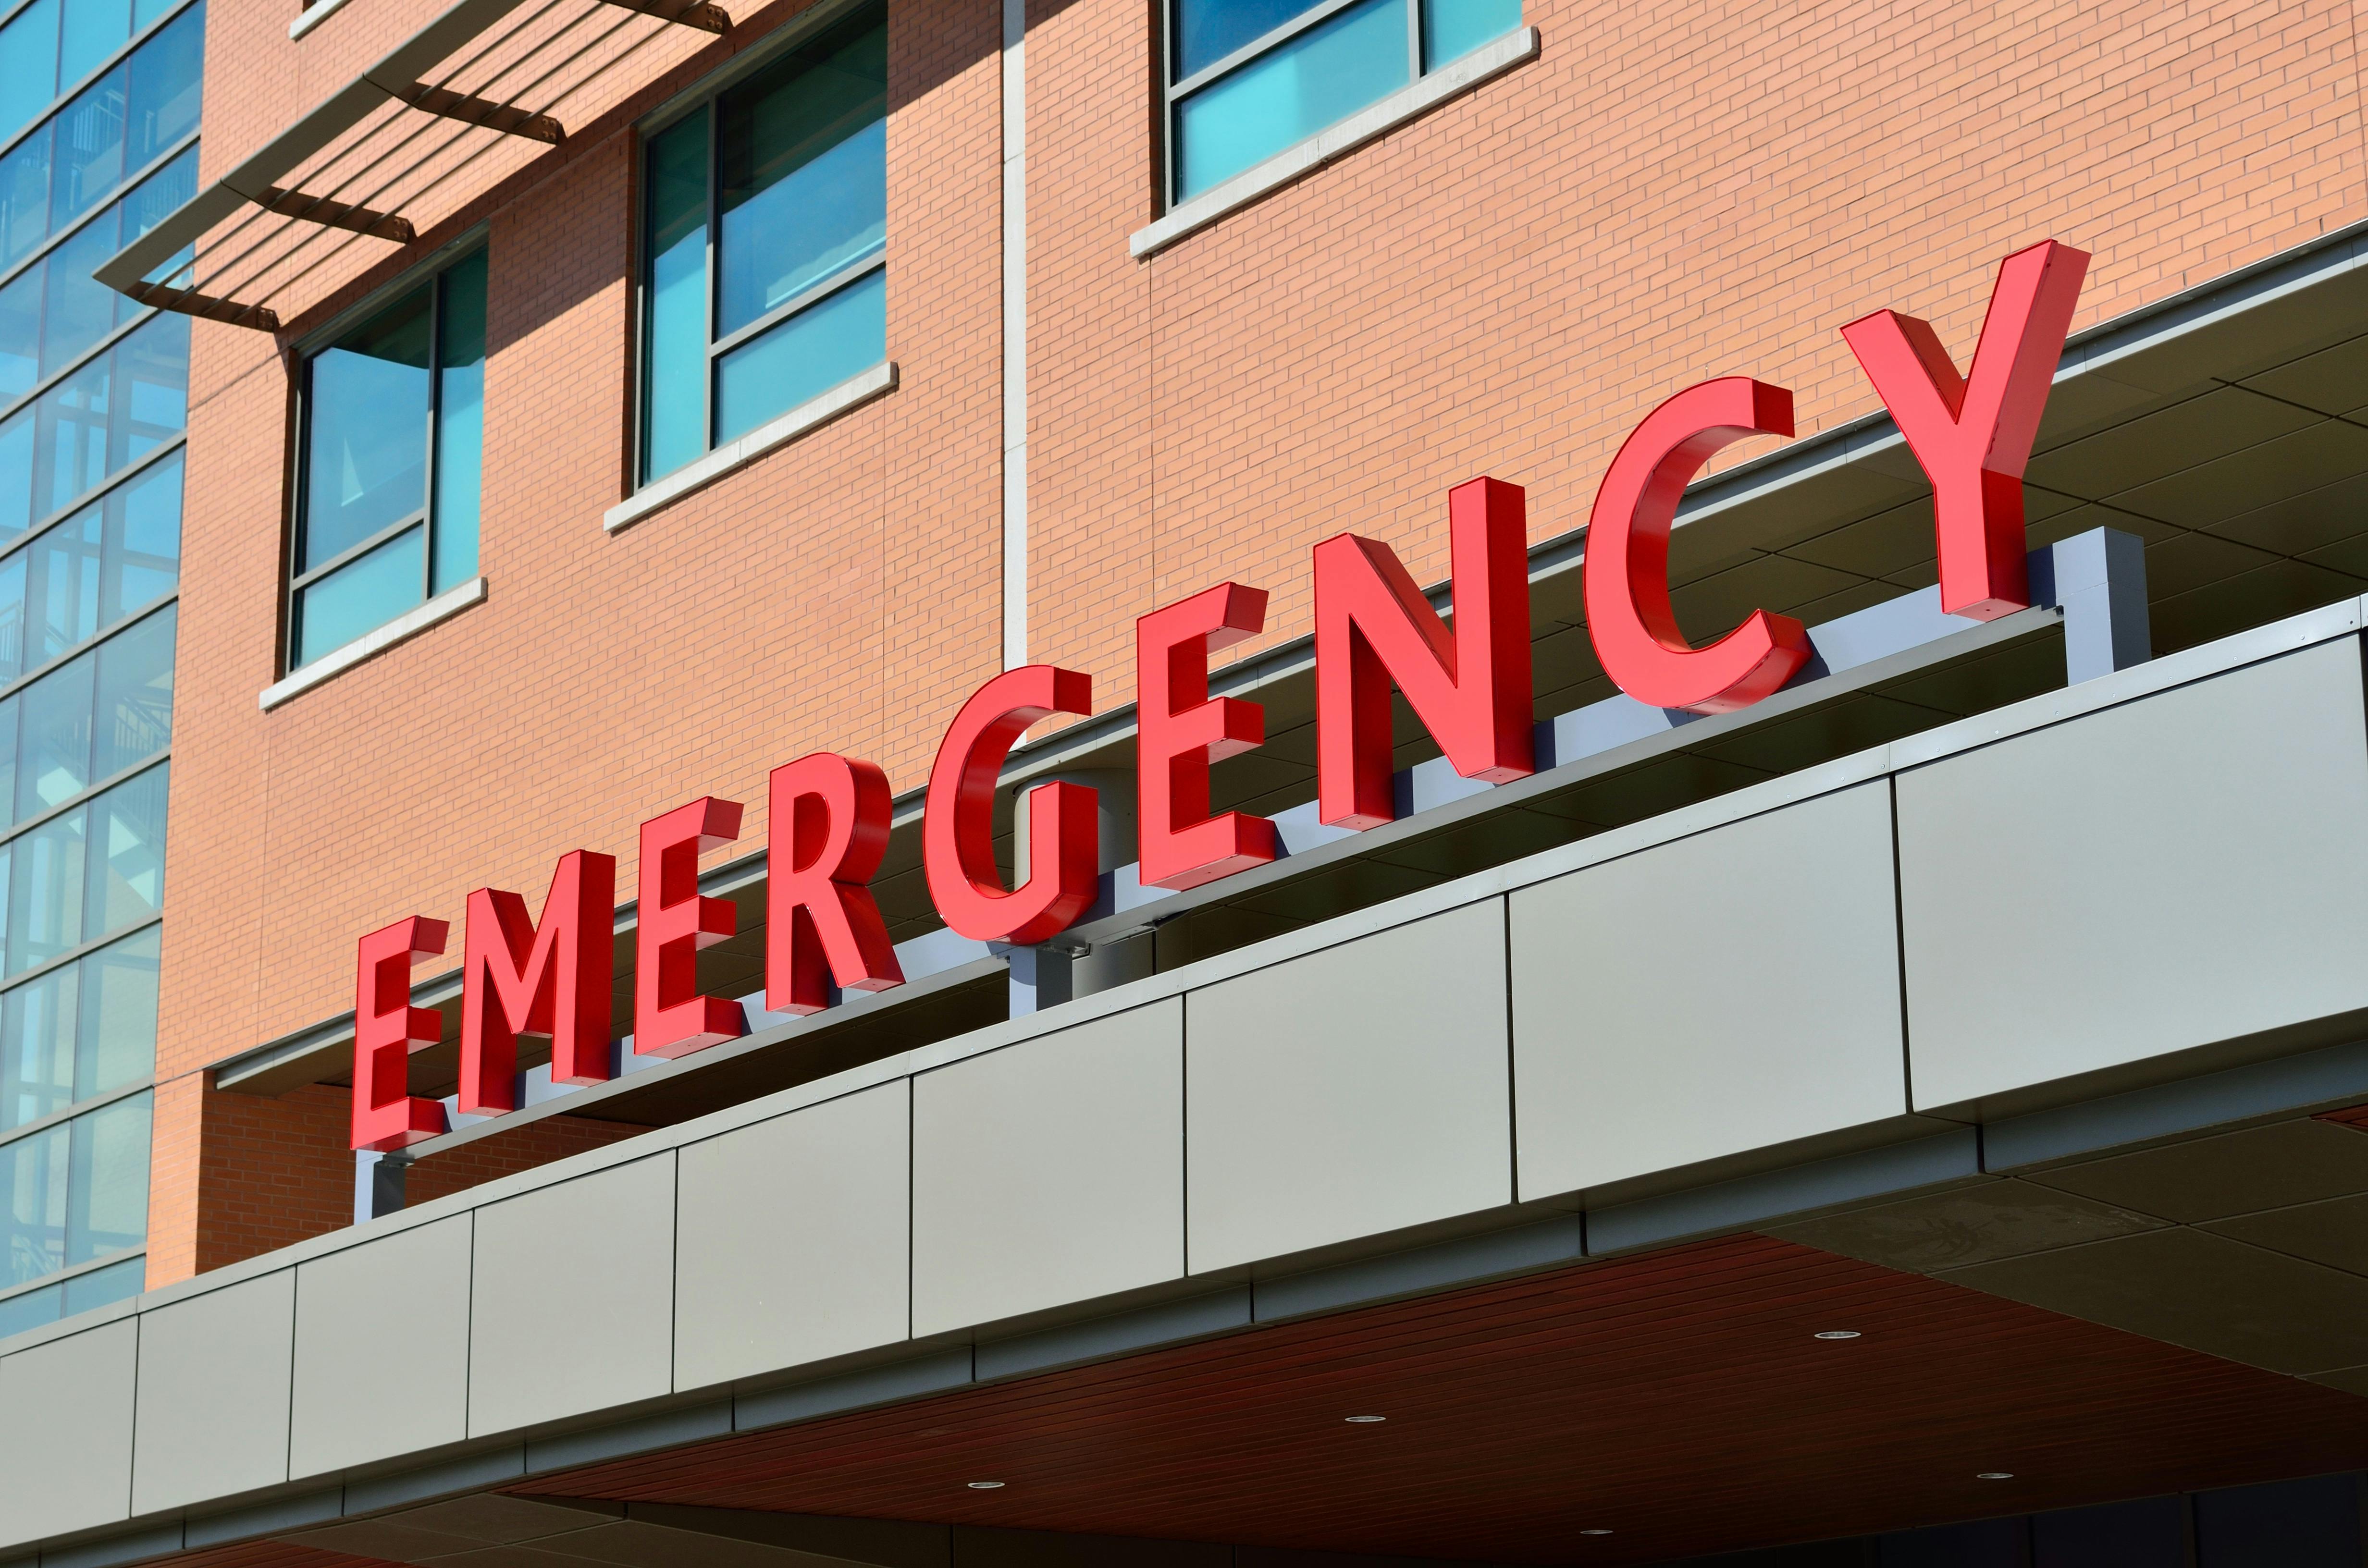 Die Notfallbeschilderung eines Krankenhauses. | Quelle: Pexels